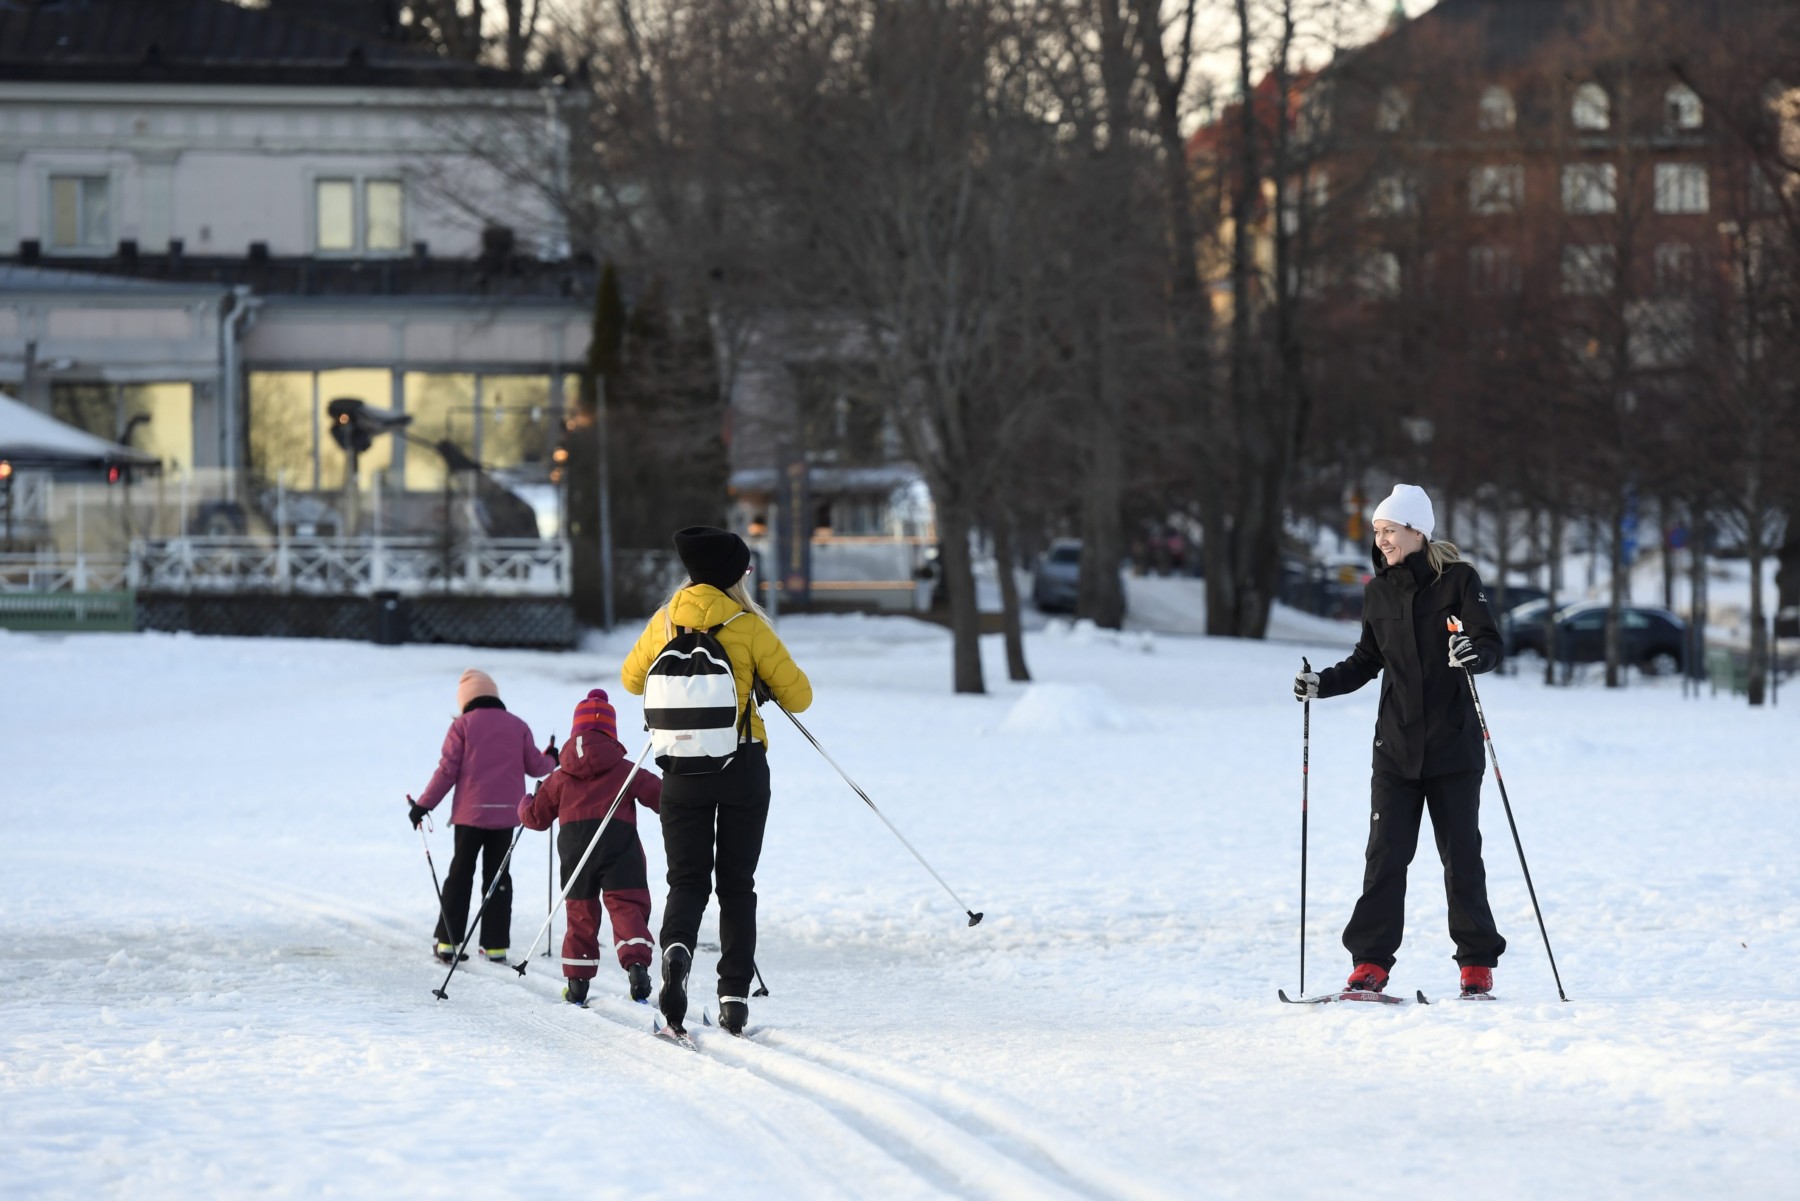 Dos adultos y dos niños practican el esquí de fondo en un parque con edificios al fondo.